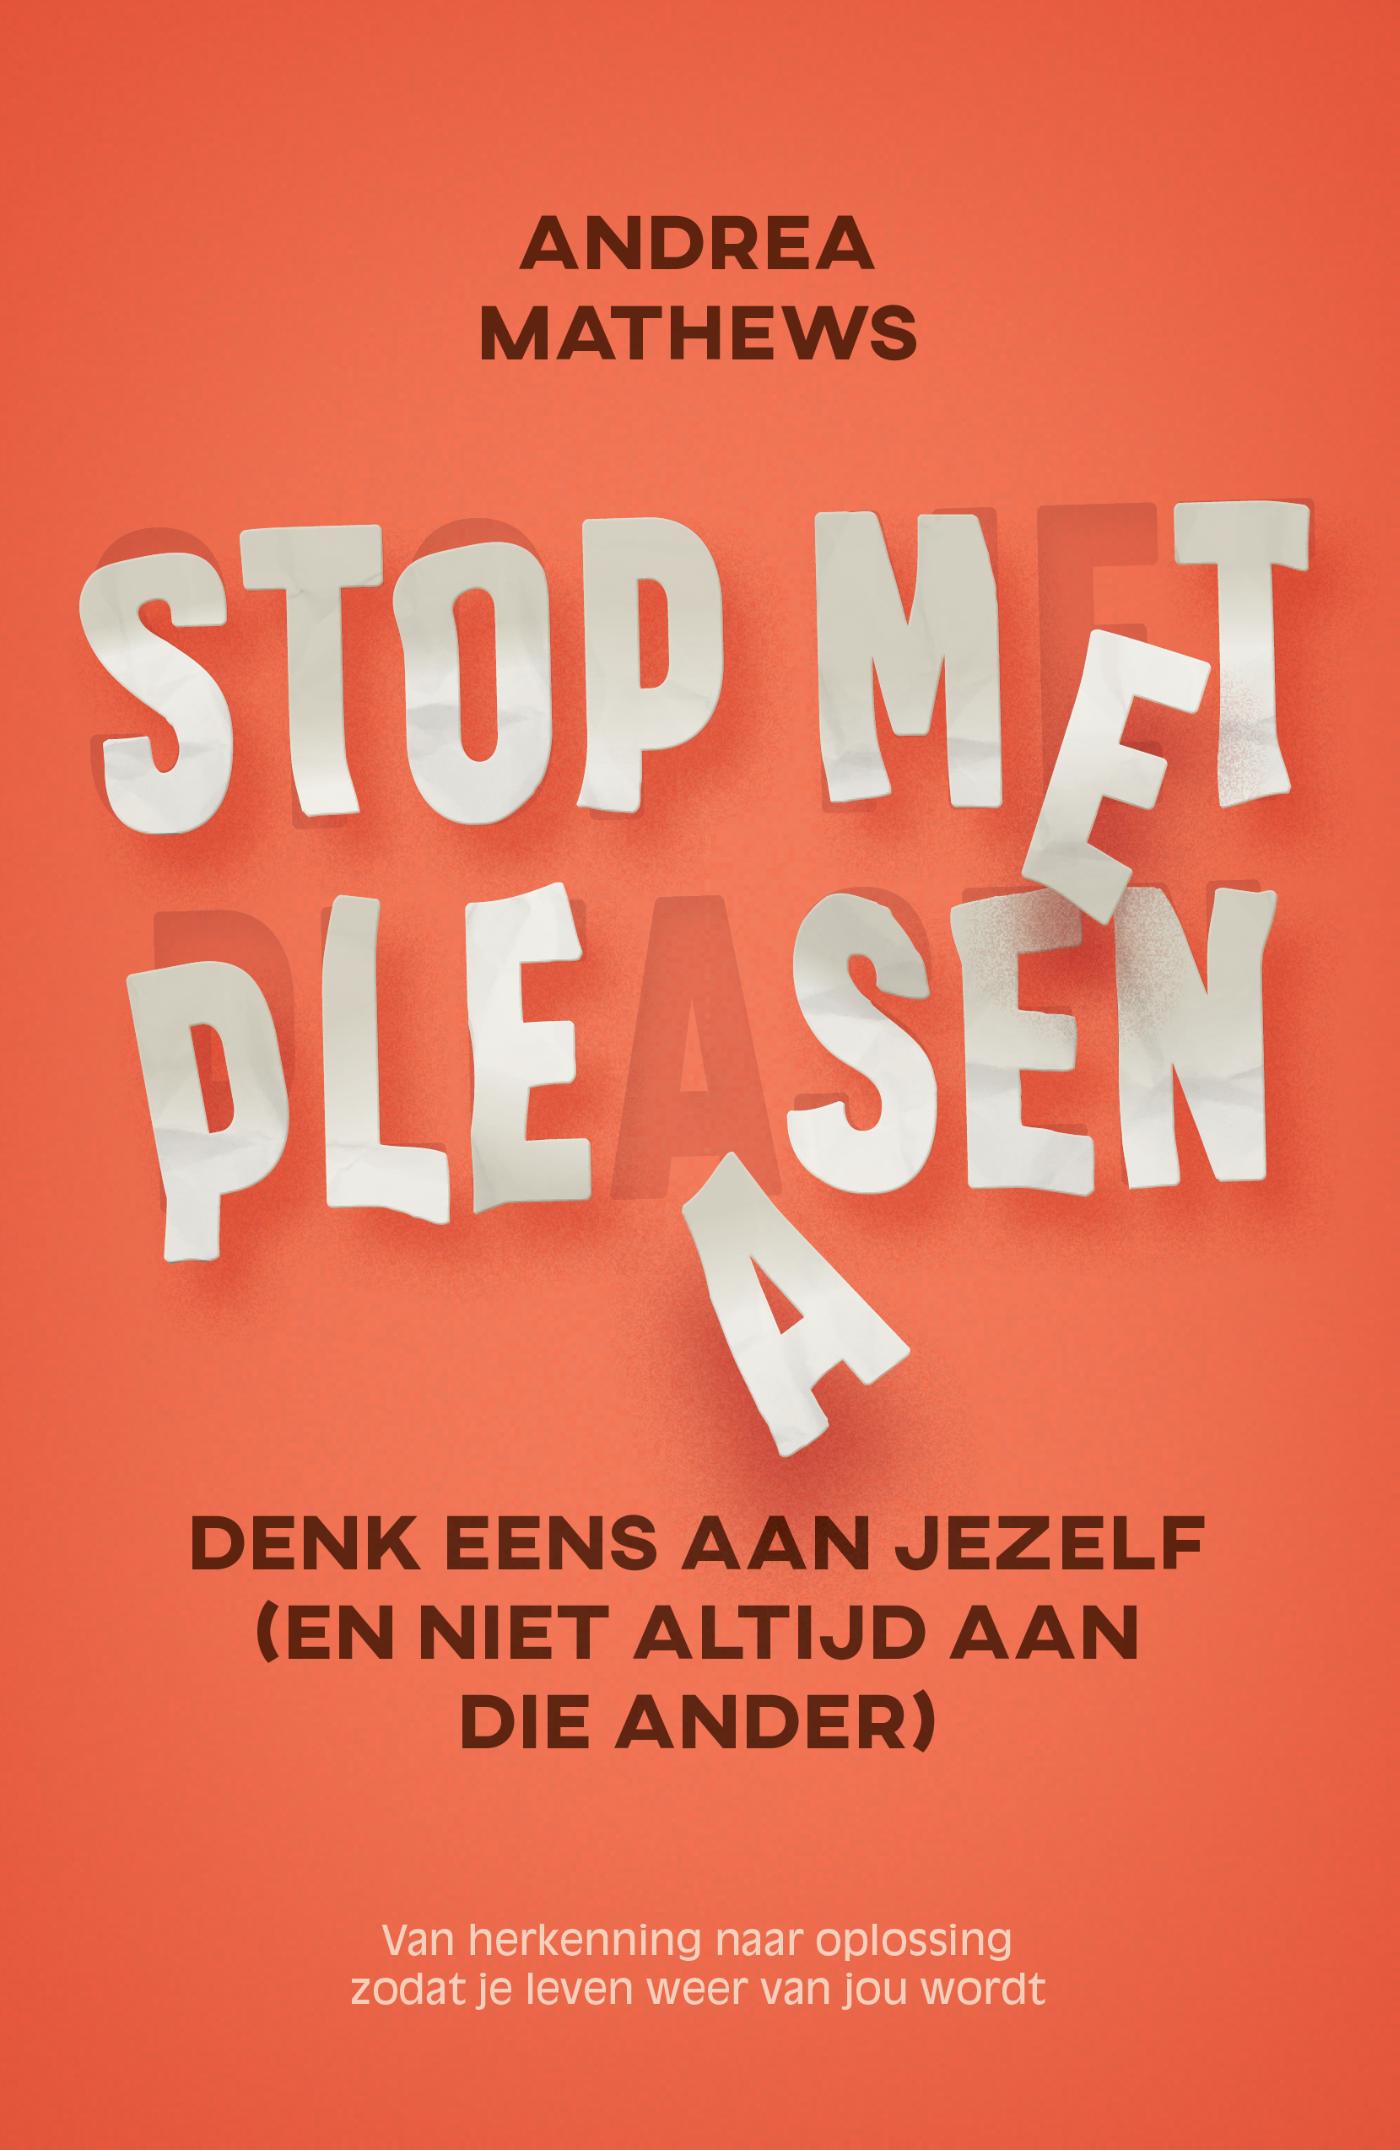 Stop met pleasen